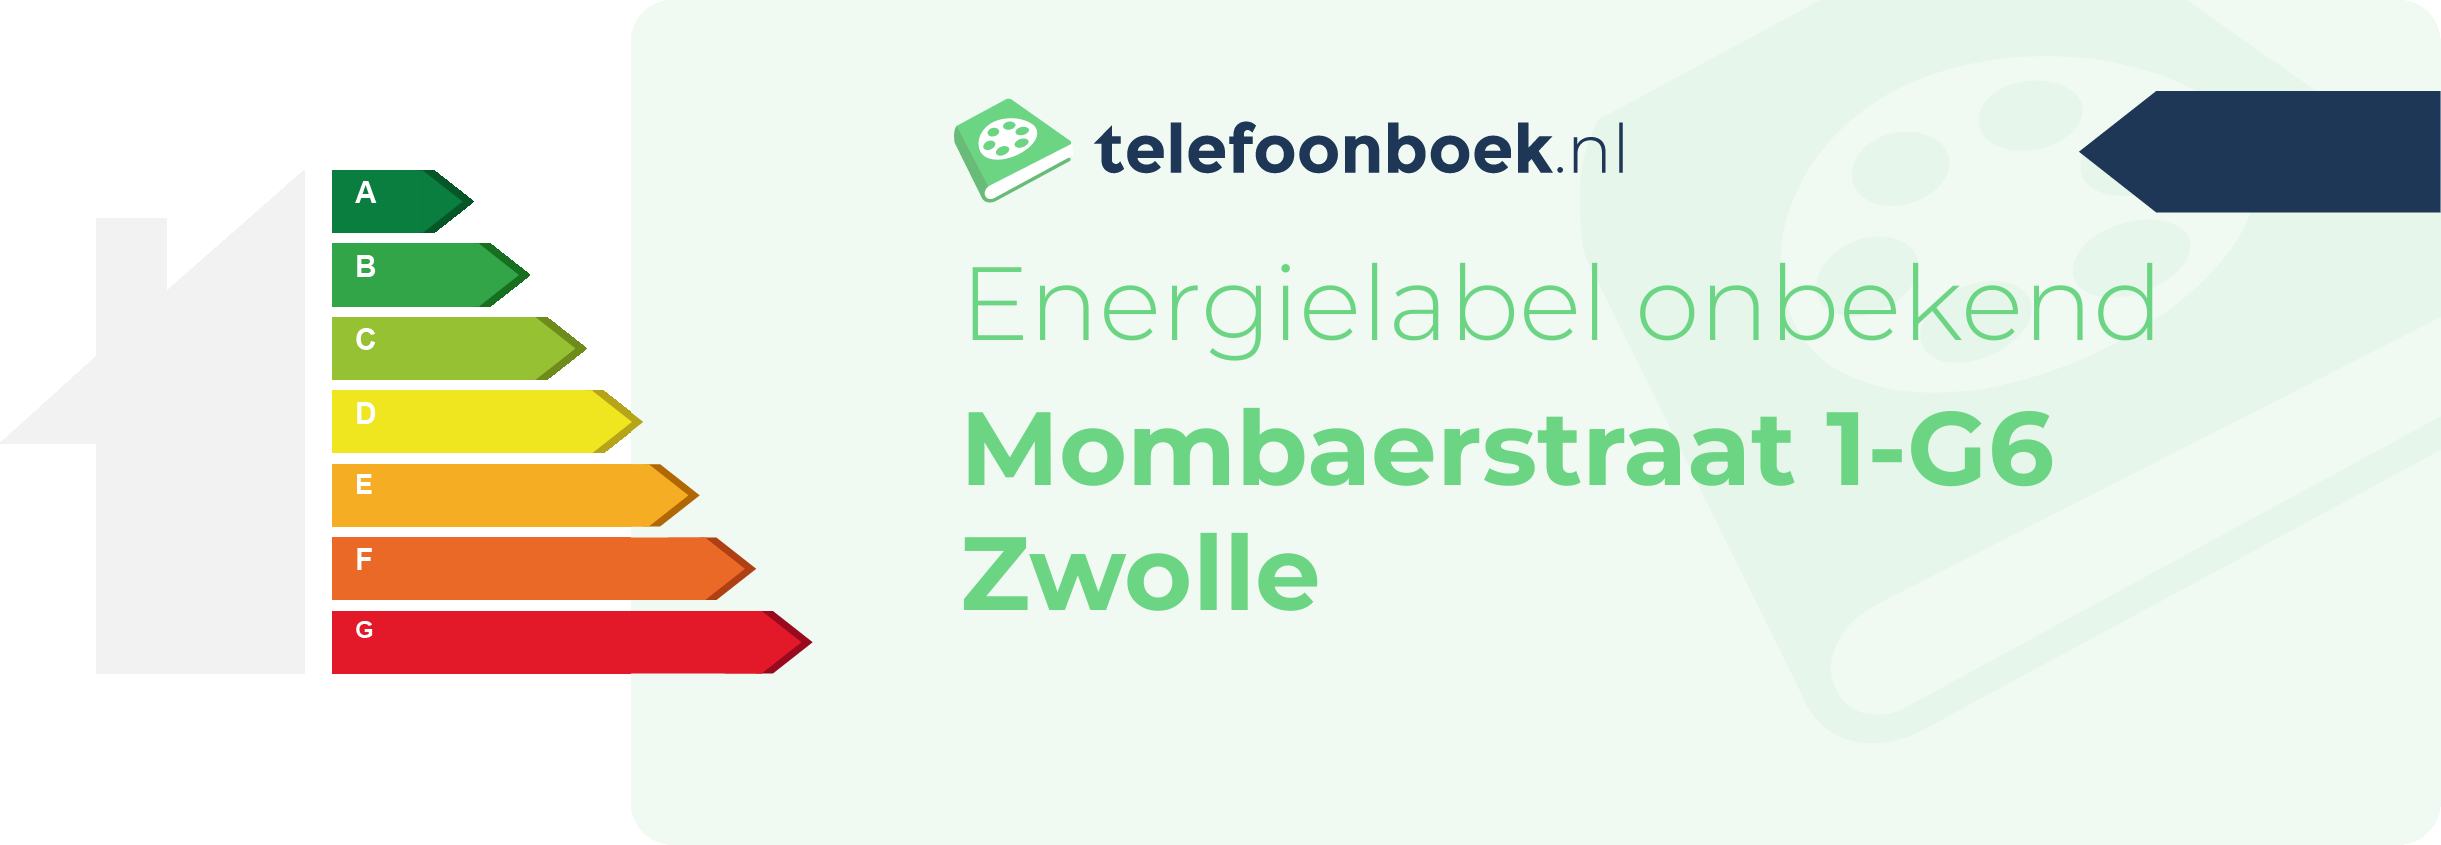 Energielabel Mombaerstraat 1-G6 Zwolle